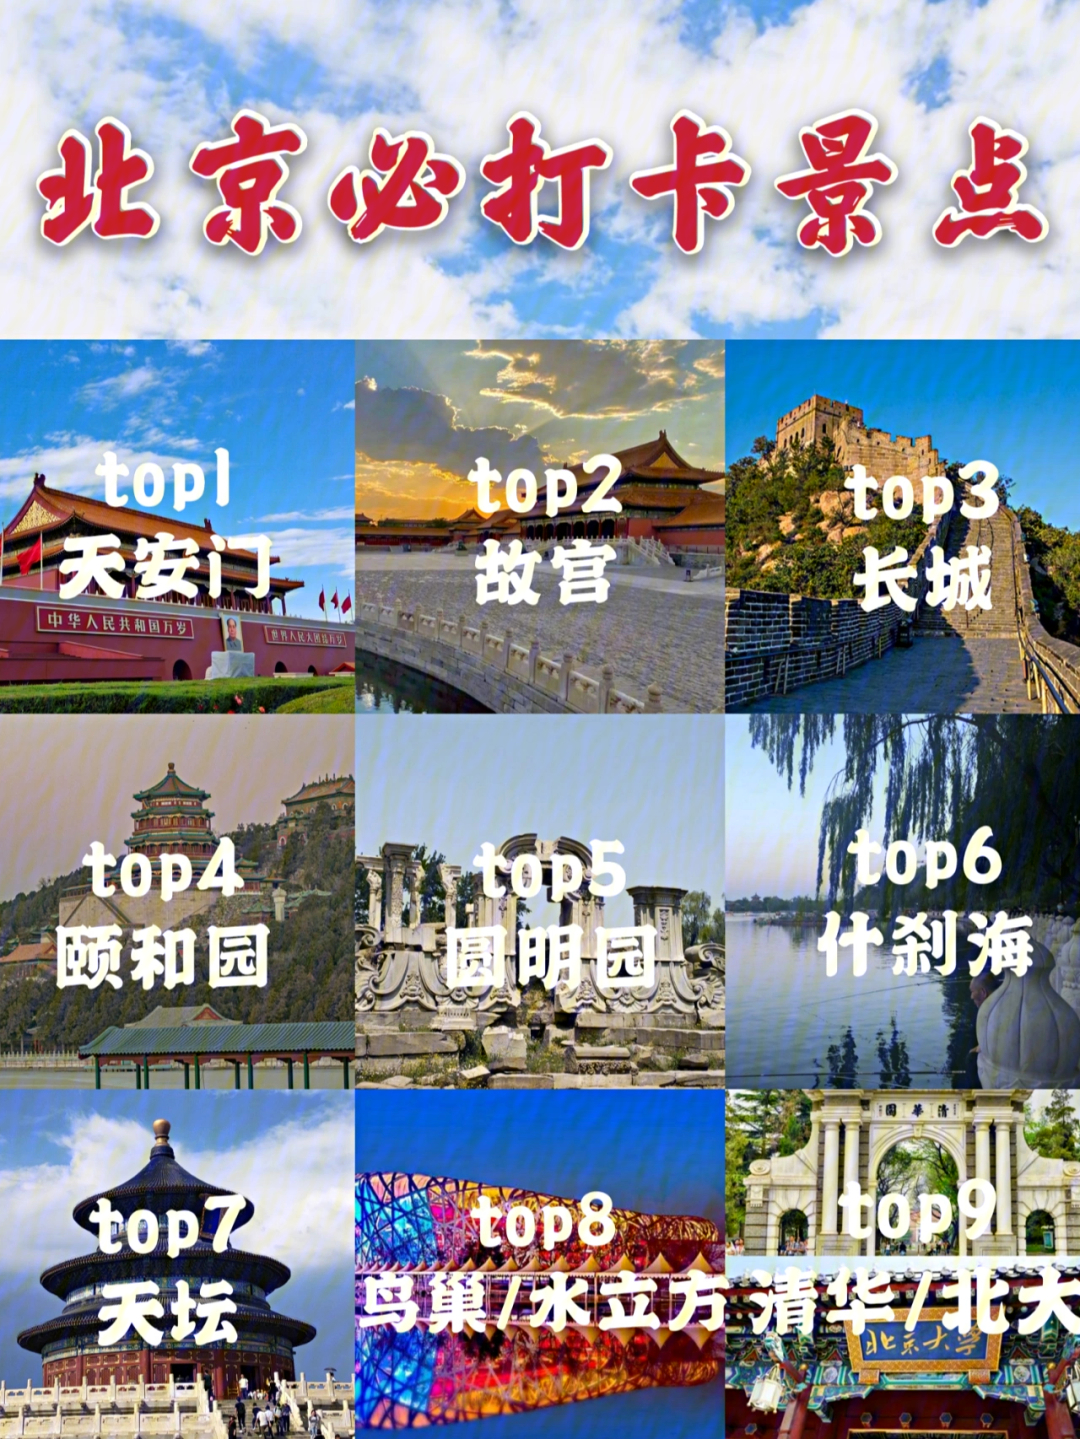 最合适的非北京莫属了,今天为大家推荐北京旅游必玩景点,第一次去的小